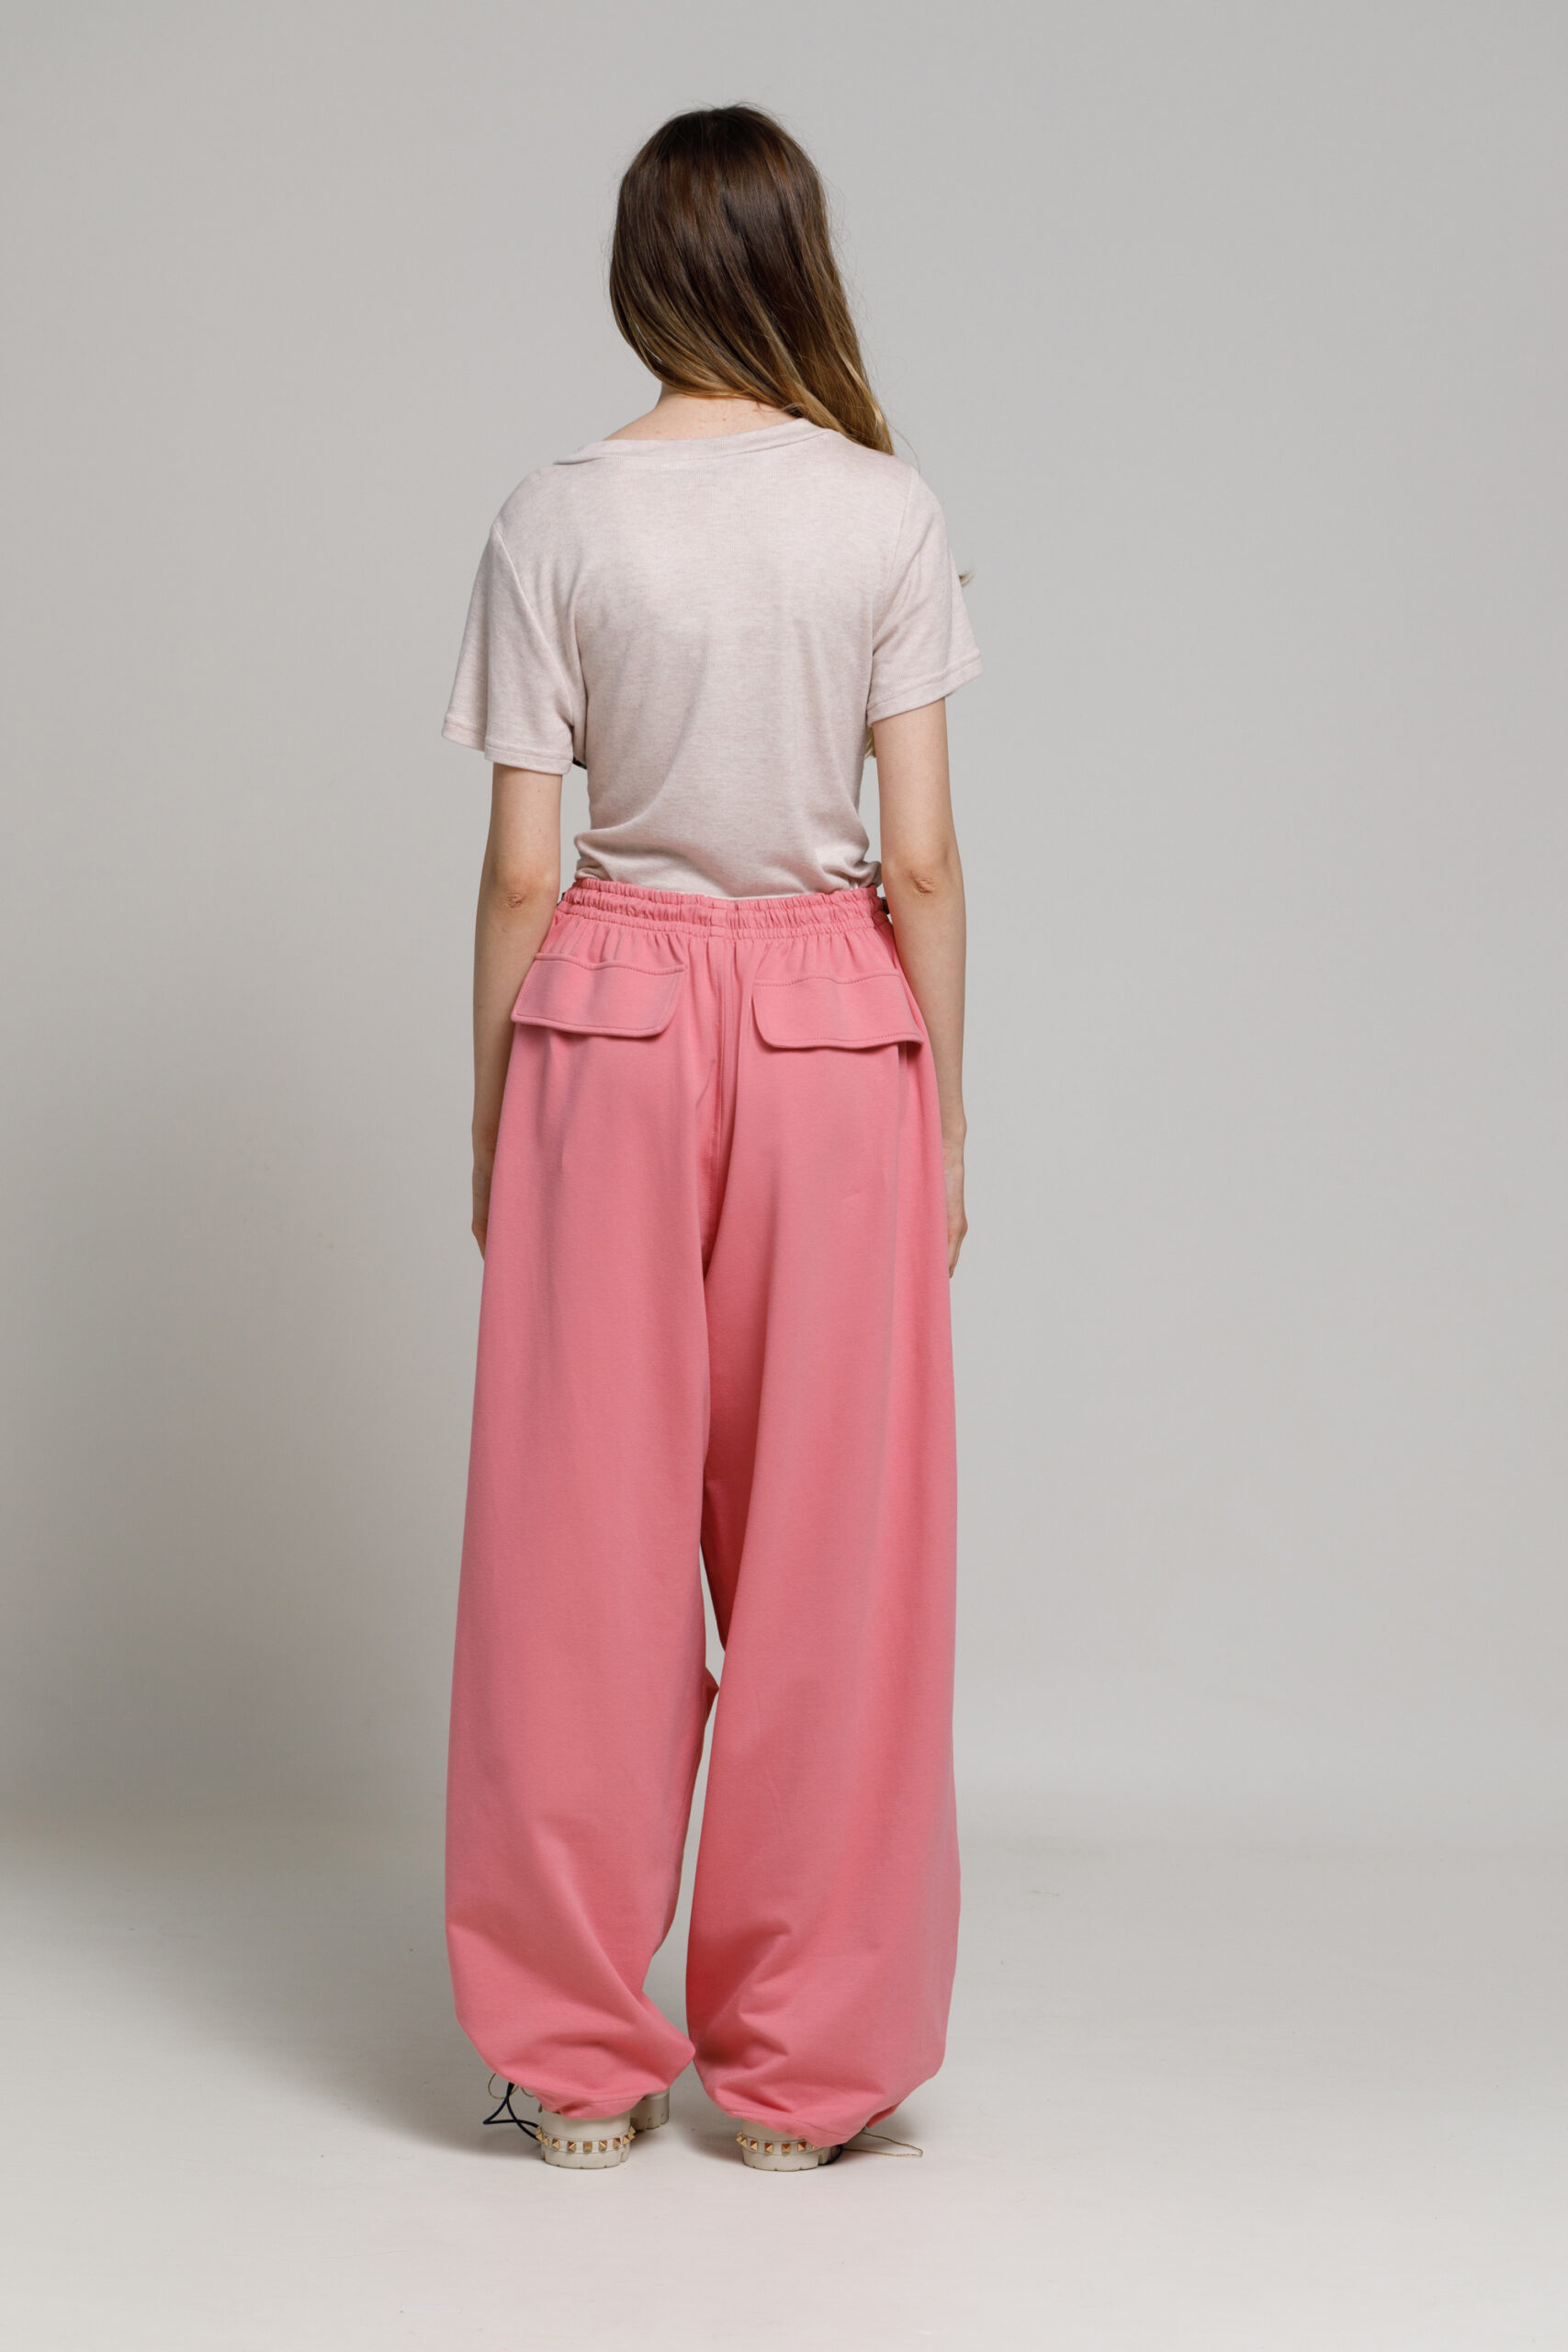 Pantalon  WAN roz din felpa Oversize. Materiale naturale, design unicat, cu broderie si aplicatii handmade